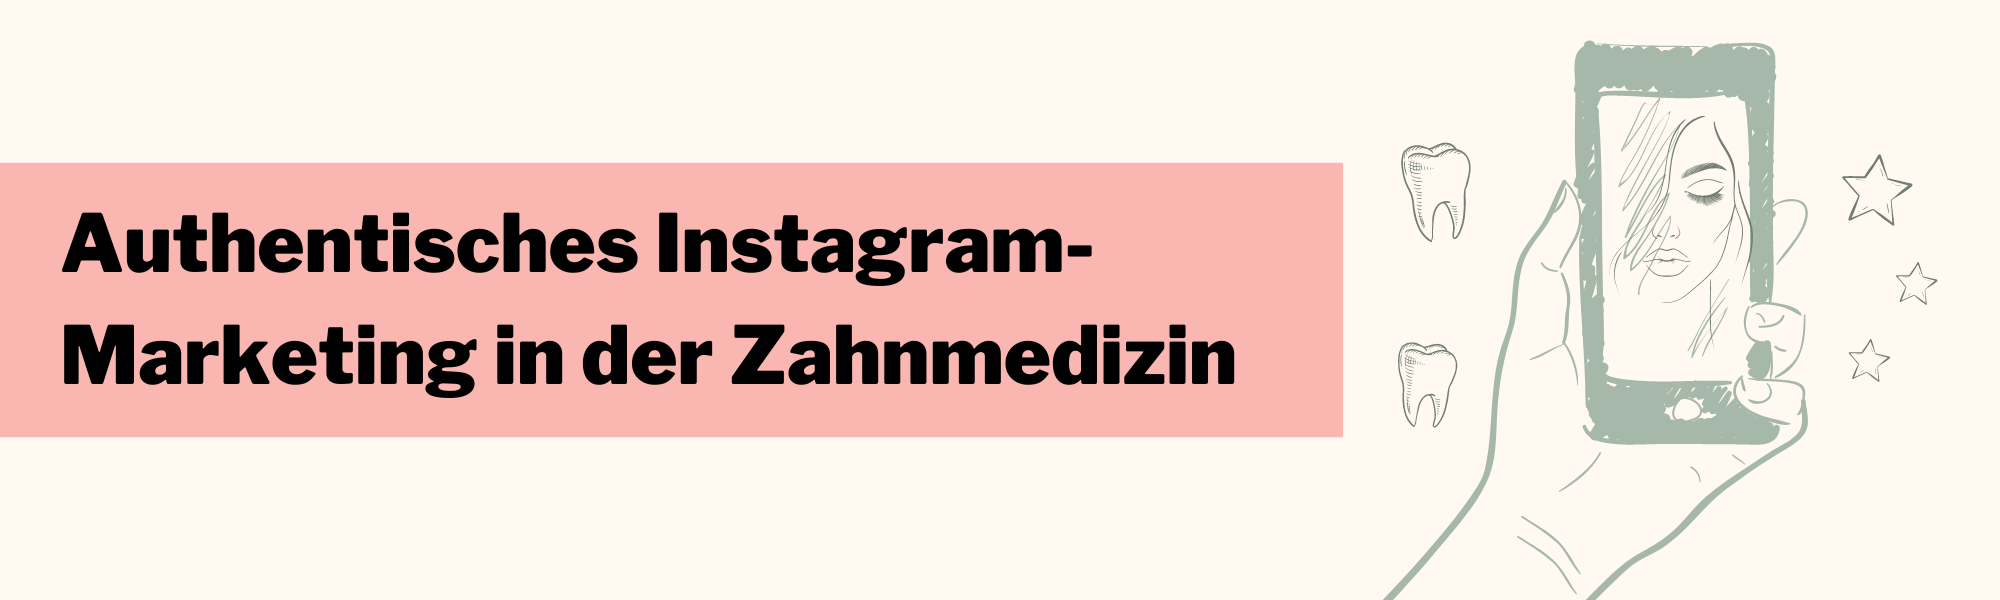 authentisches Instagram-Marketing Zahnmedizin